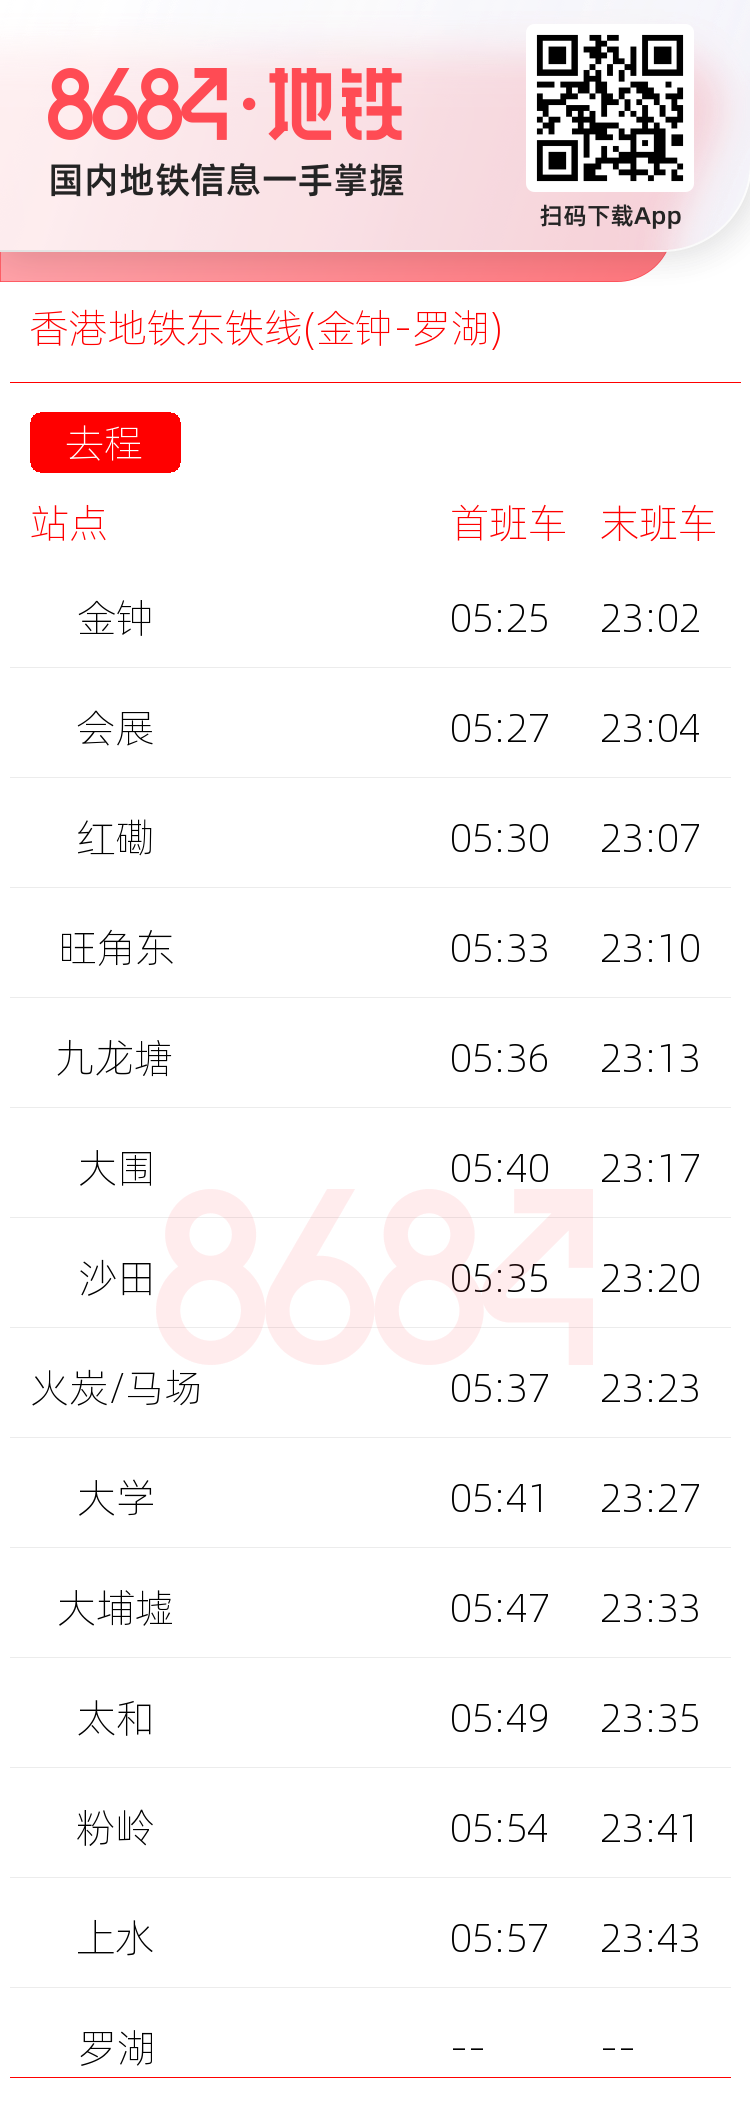 香港地铁东铁线(金钟-罗湖)运营时间表